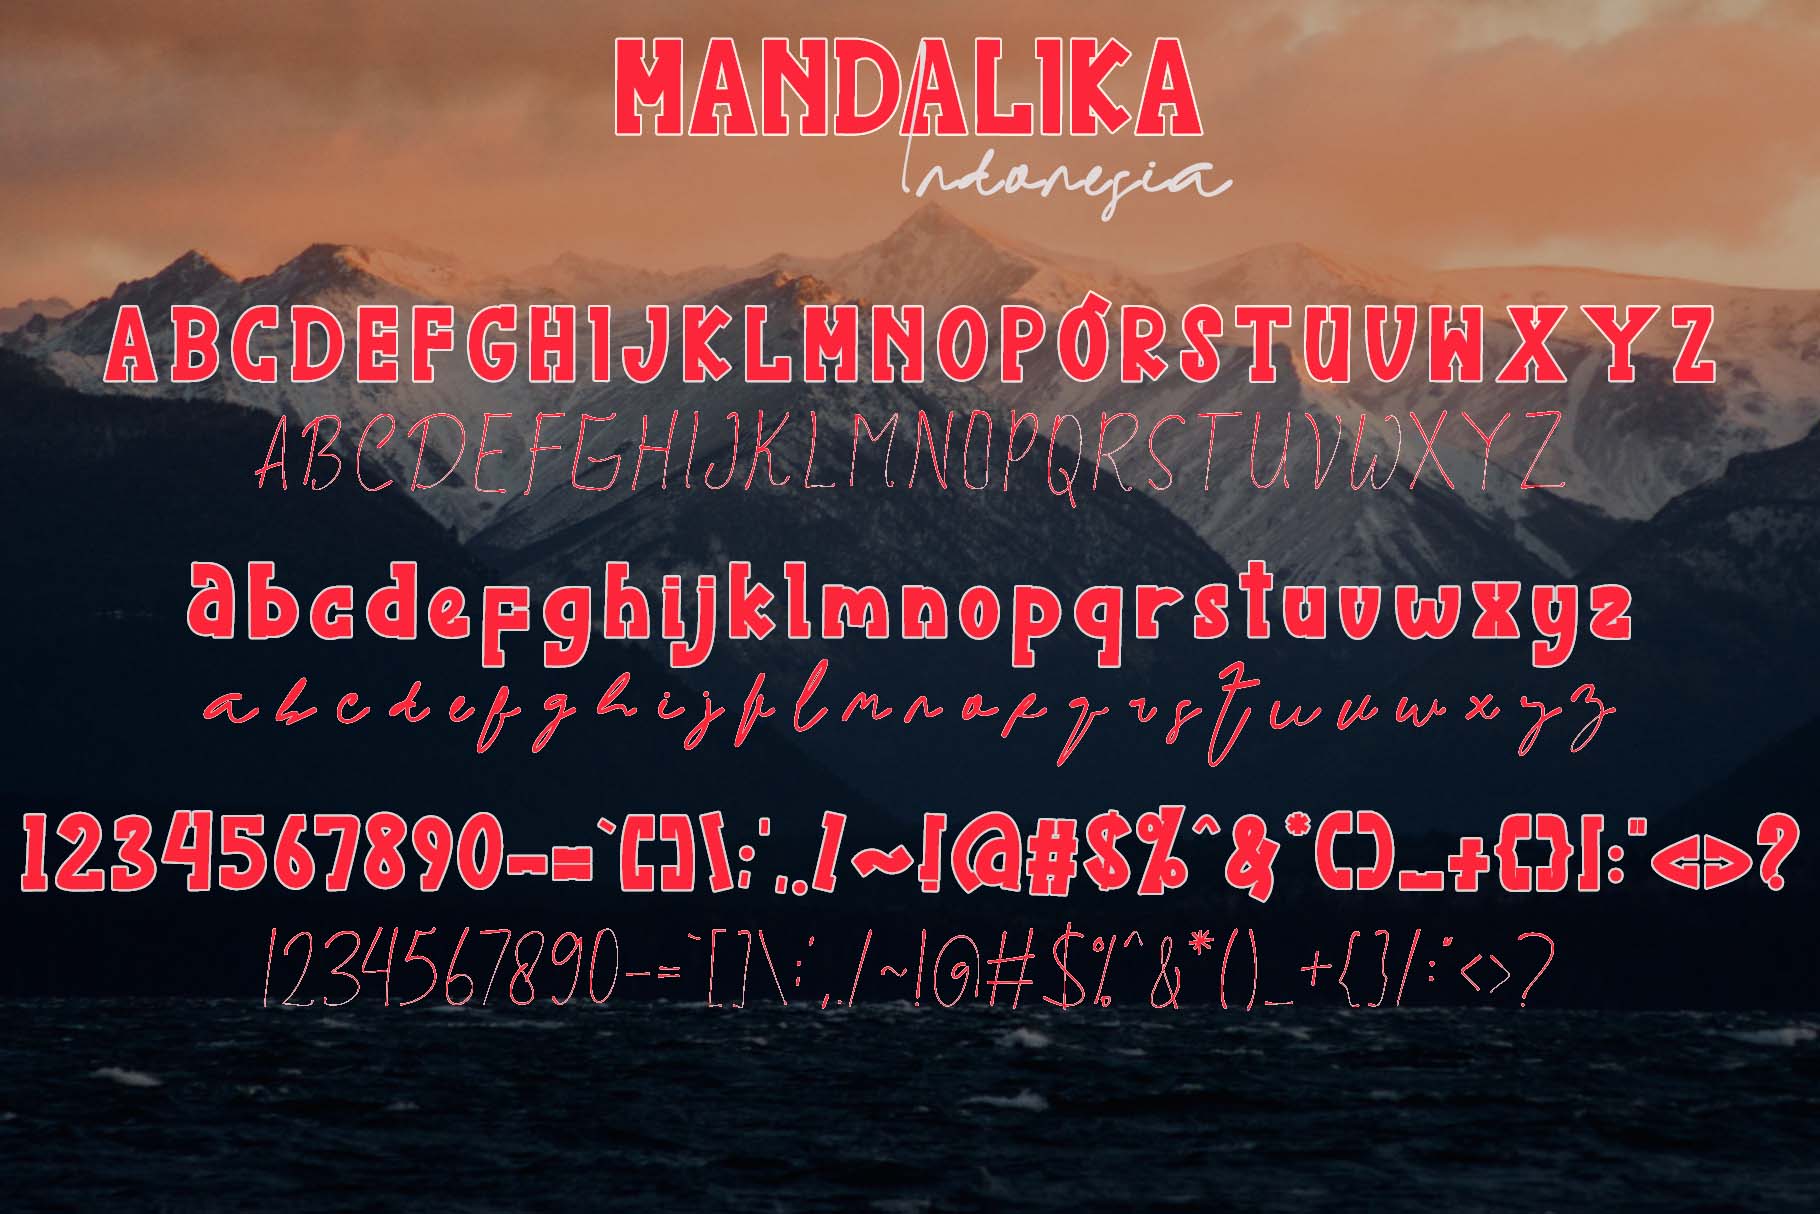 Mandalika Indonesia